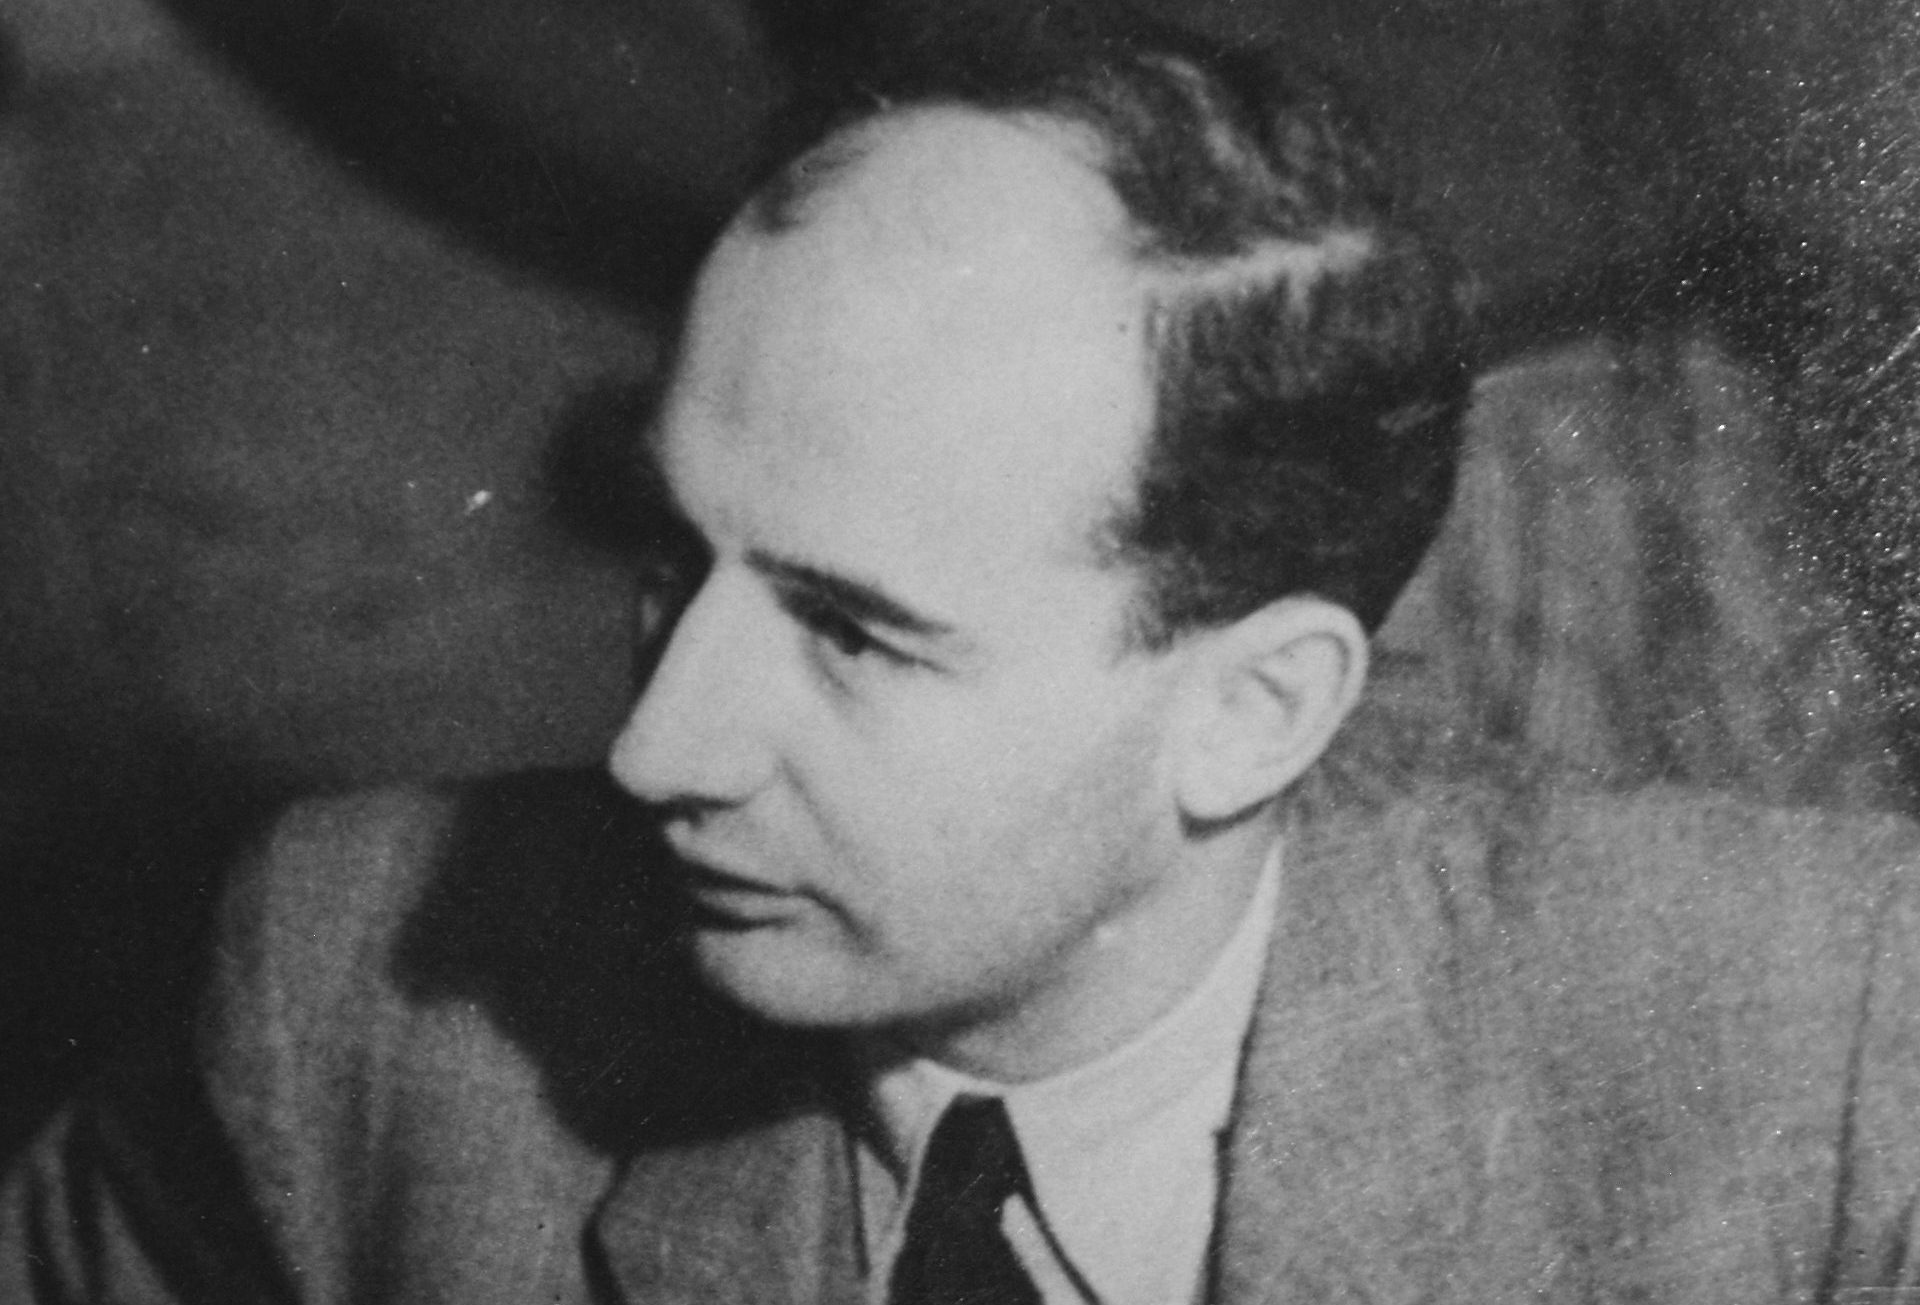 Porträtt av Raoul Wallenberg iklädd kostym som tittar på något utanför bild.